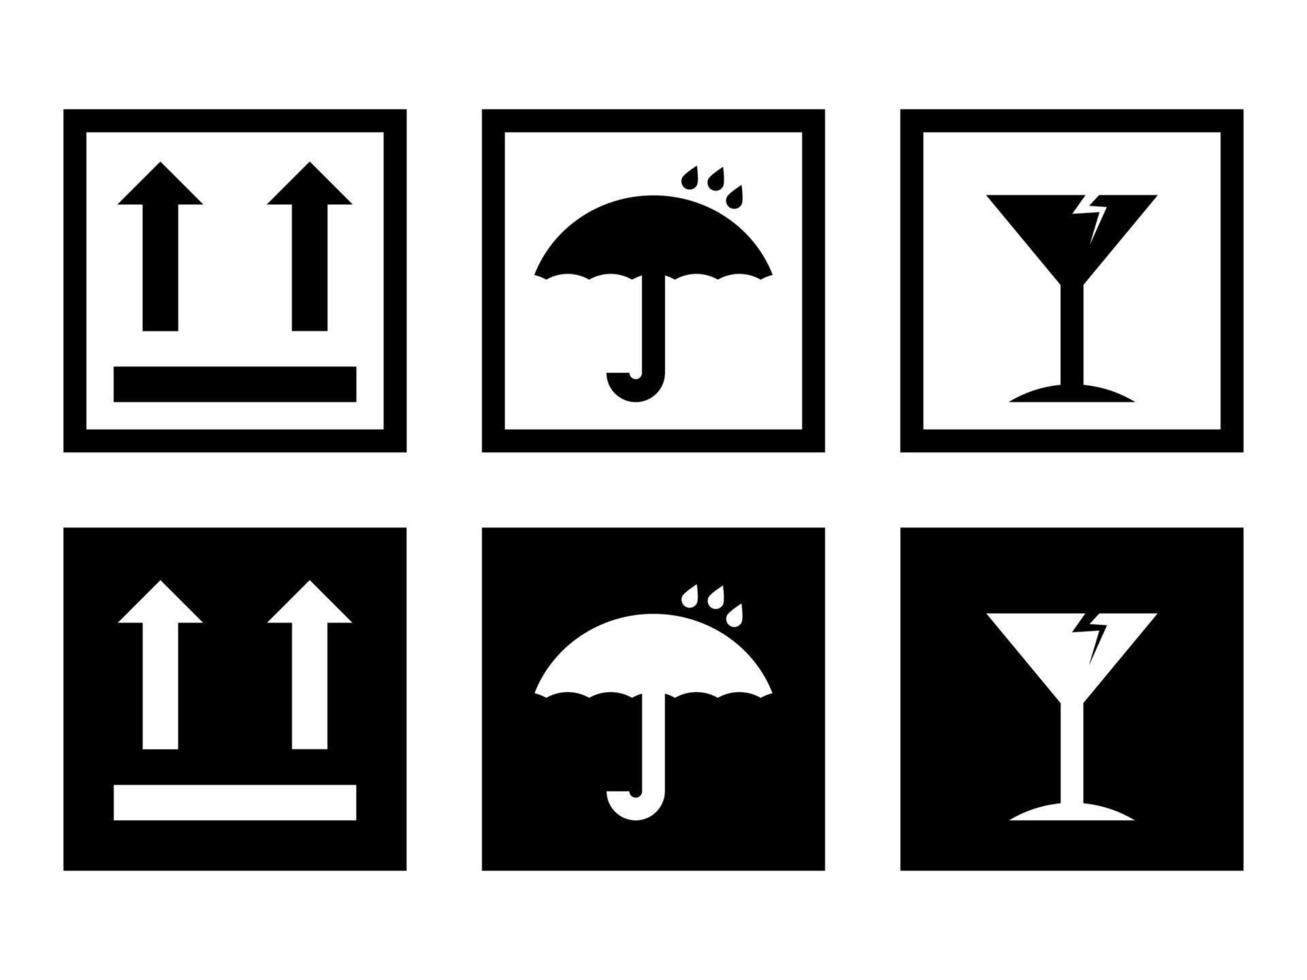 caixa frágil, sinais de vetor de aviso de carga definidos em ícones de estilo moderno estão localizados em fundos brancos e pretos. o pacote tem seis ícones.